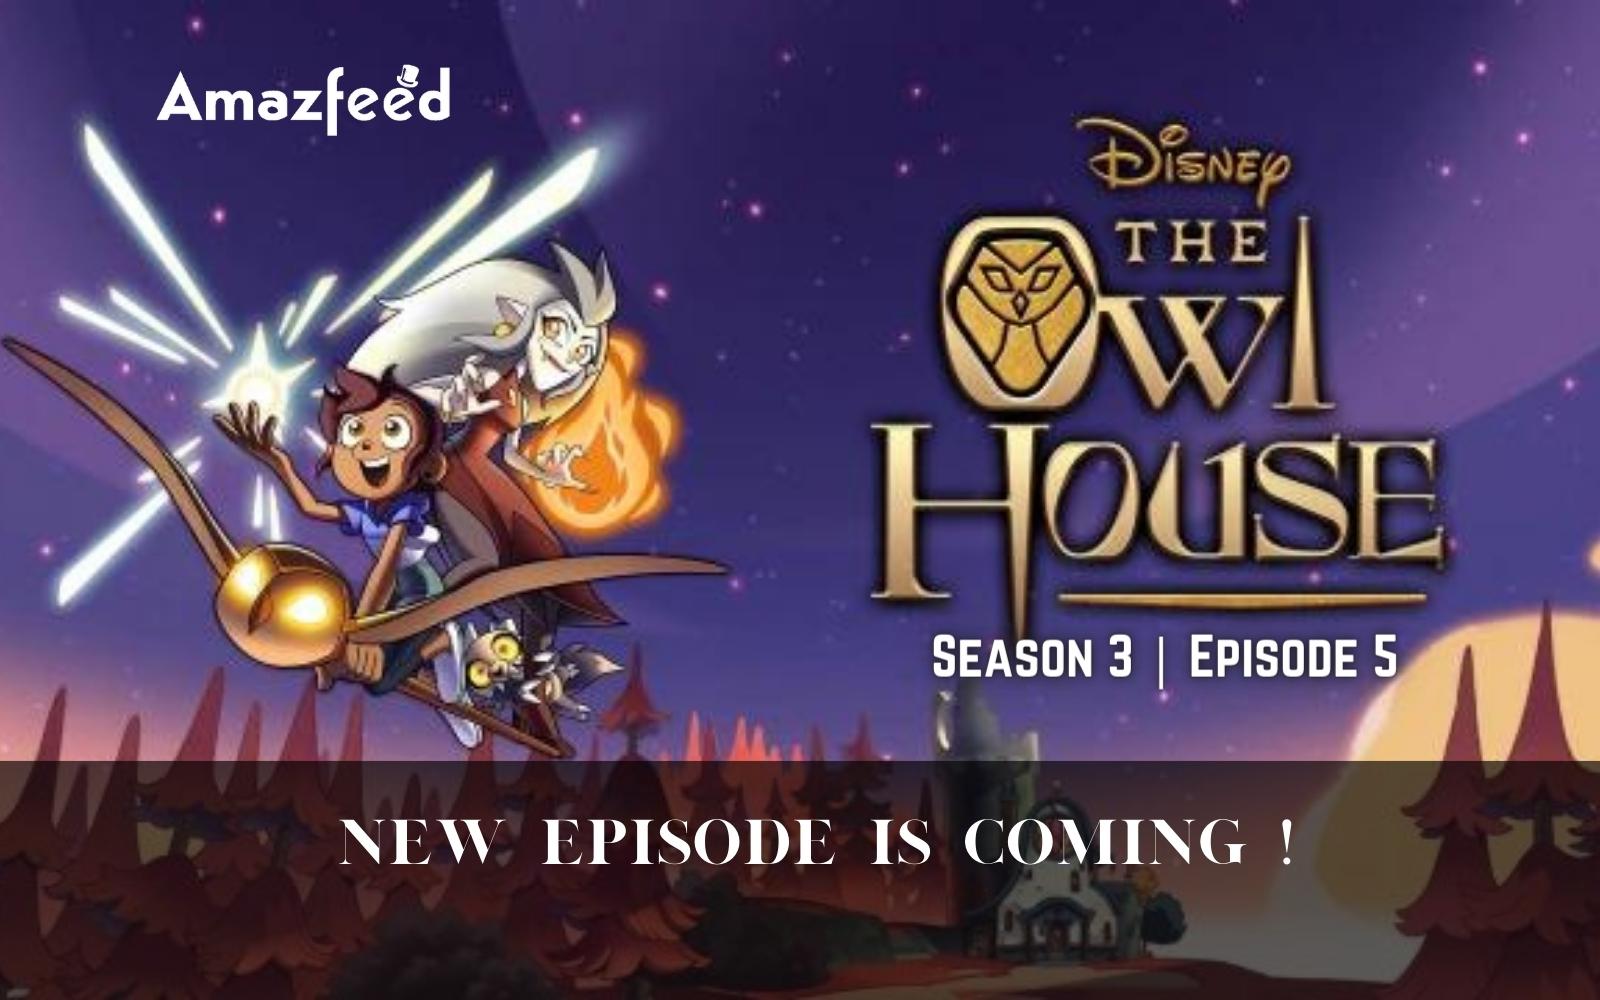 Owl house season 3 countdown